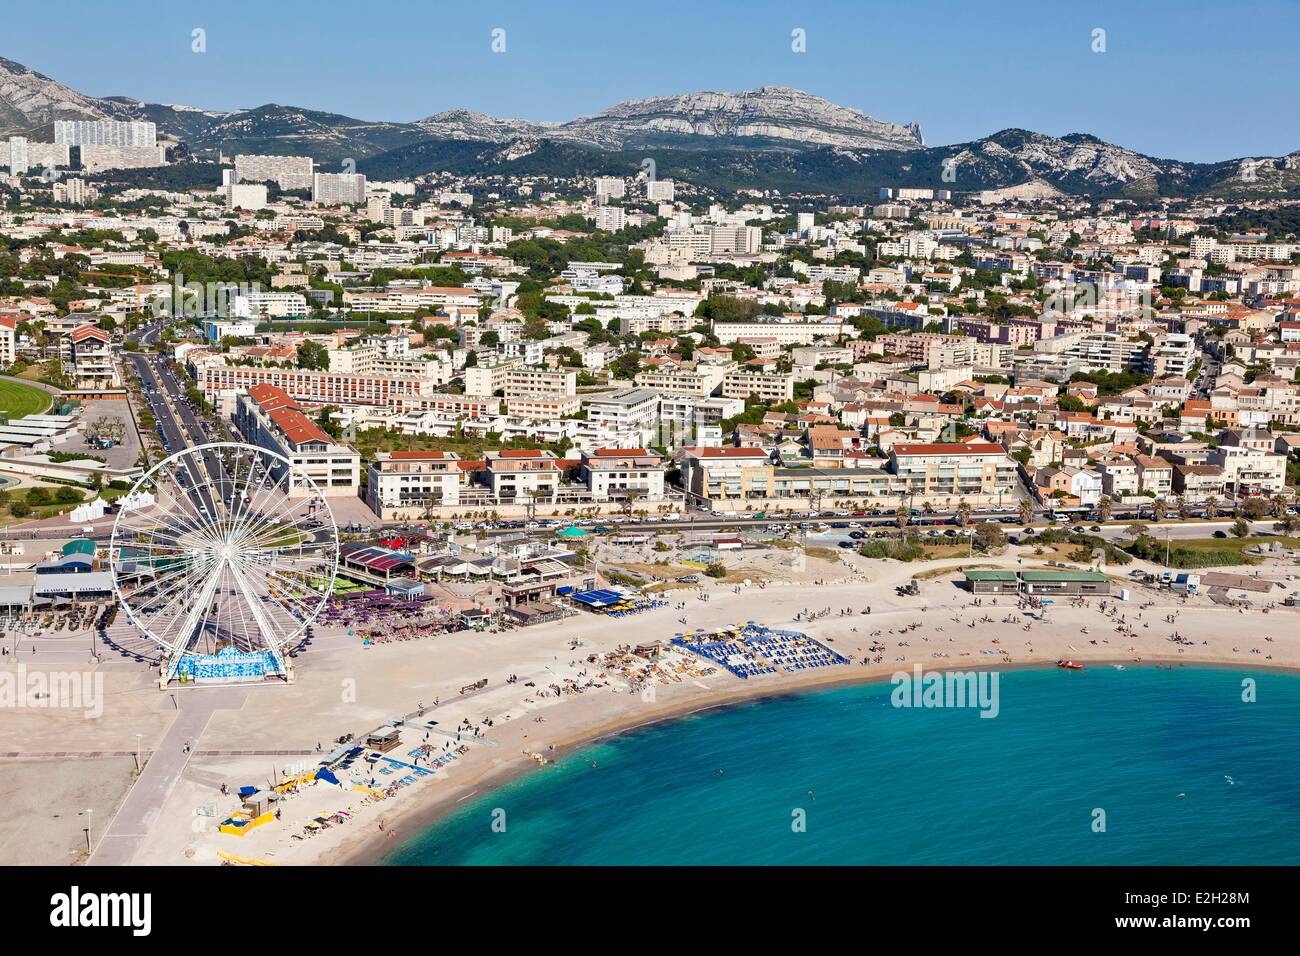 Bouches du Rhone in Frankreich Marseille europäische Hauptstadt der Kultur 2013 8. Bezirk Strände Strand Borely Bonneveune Espace Borely und Riesenrad (Luftbild) Stockfoto